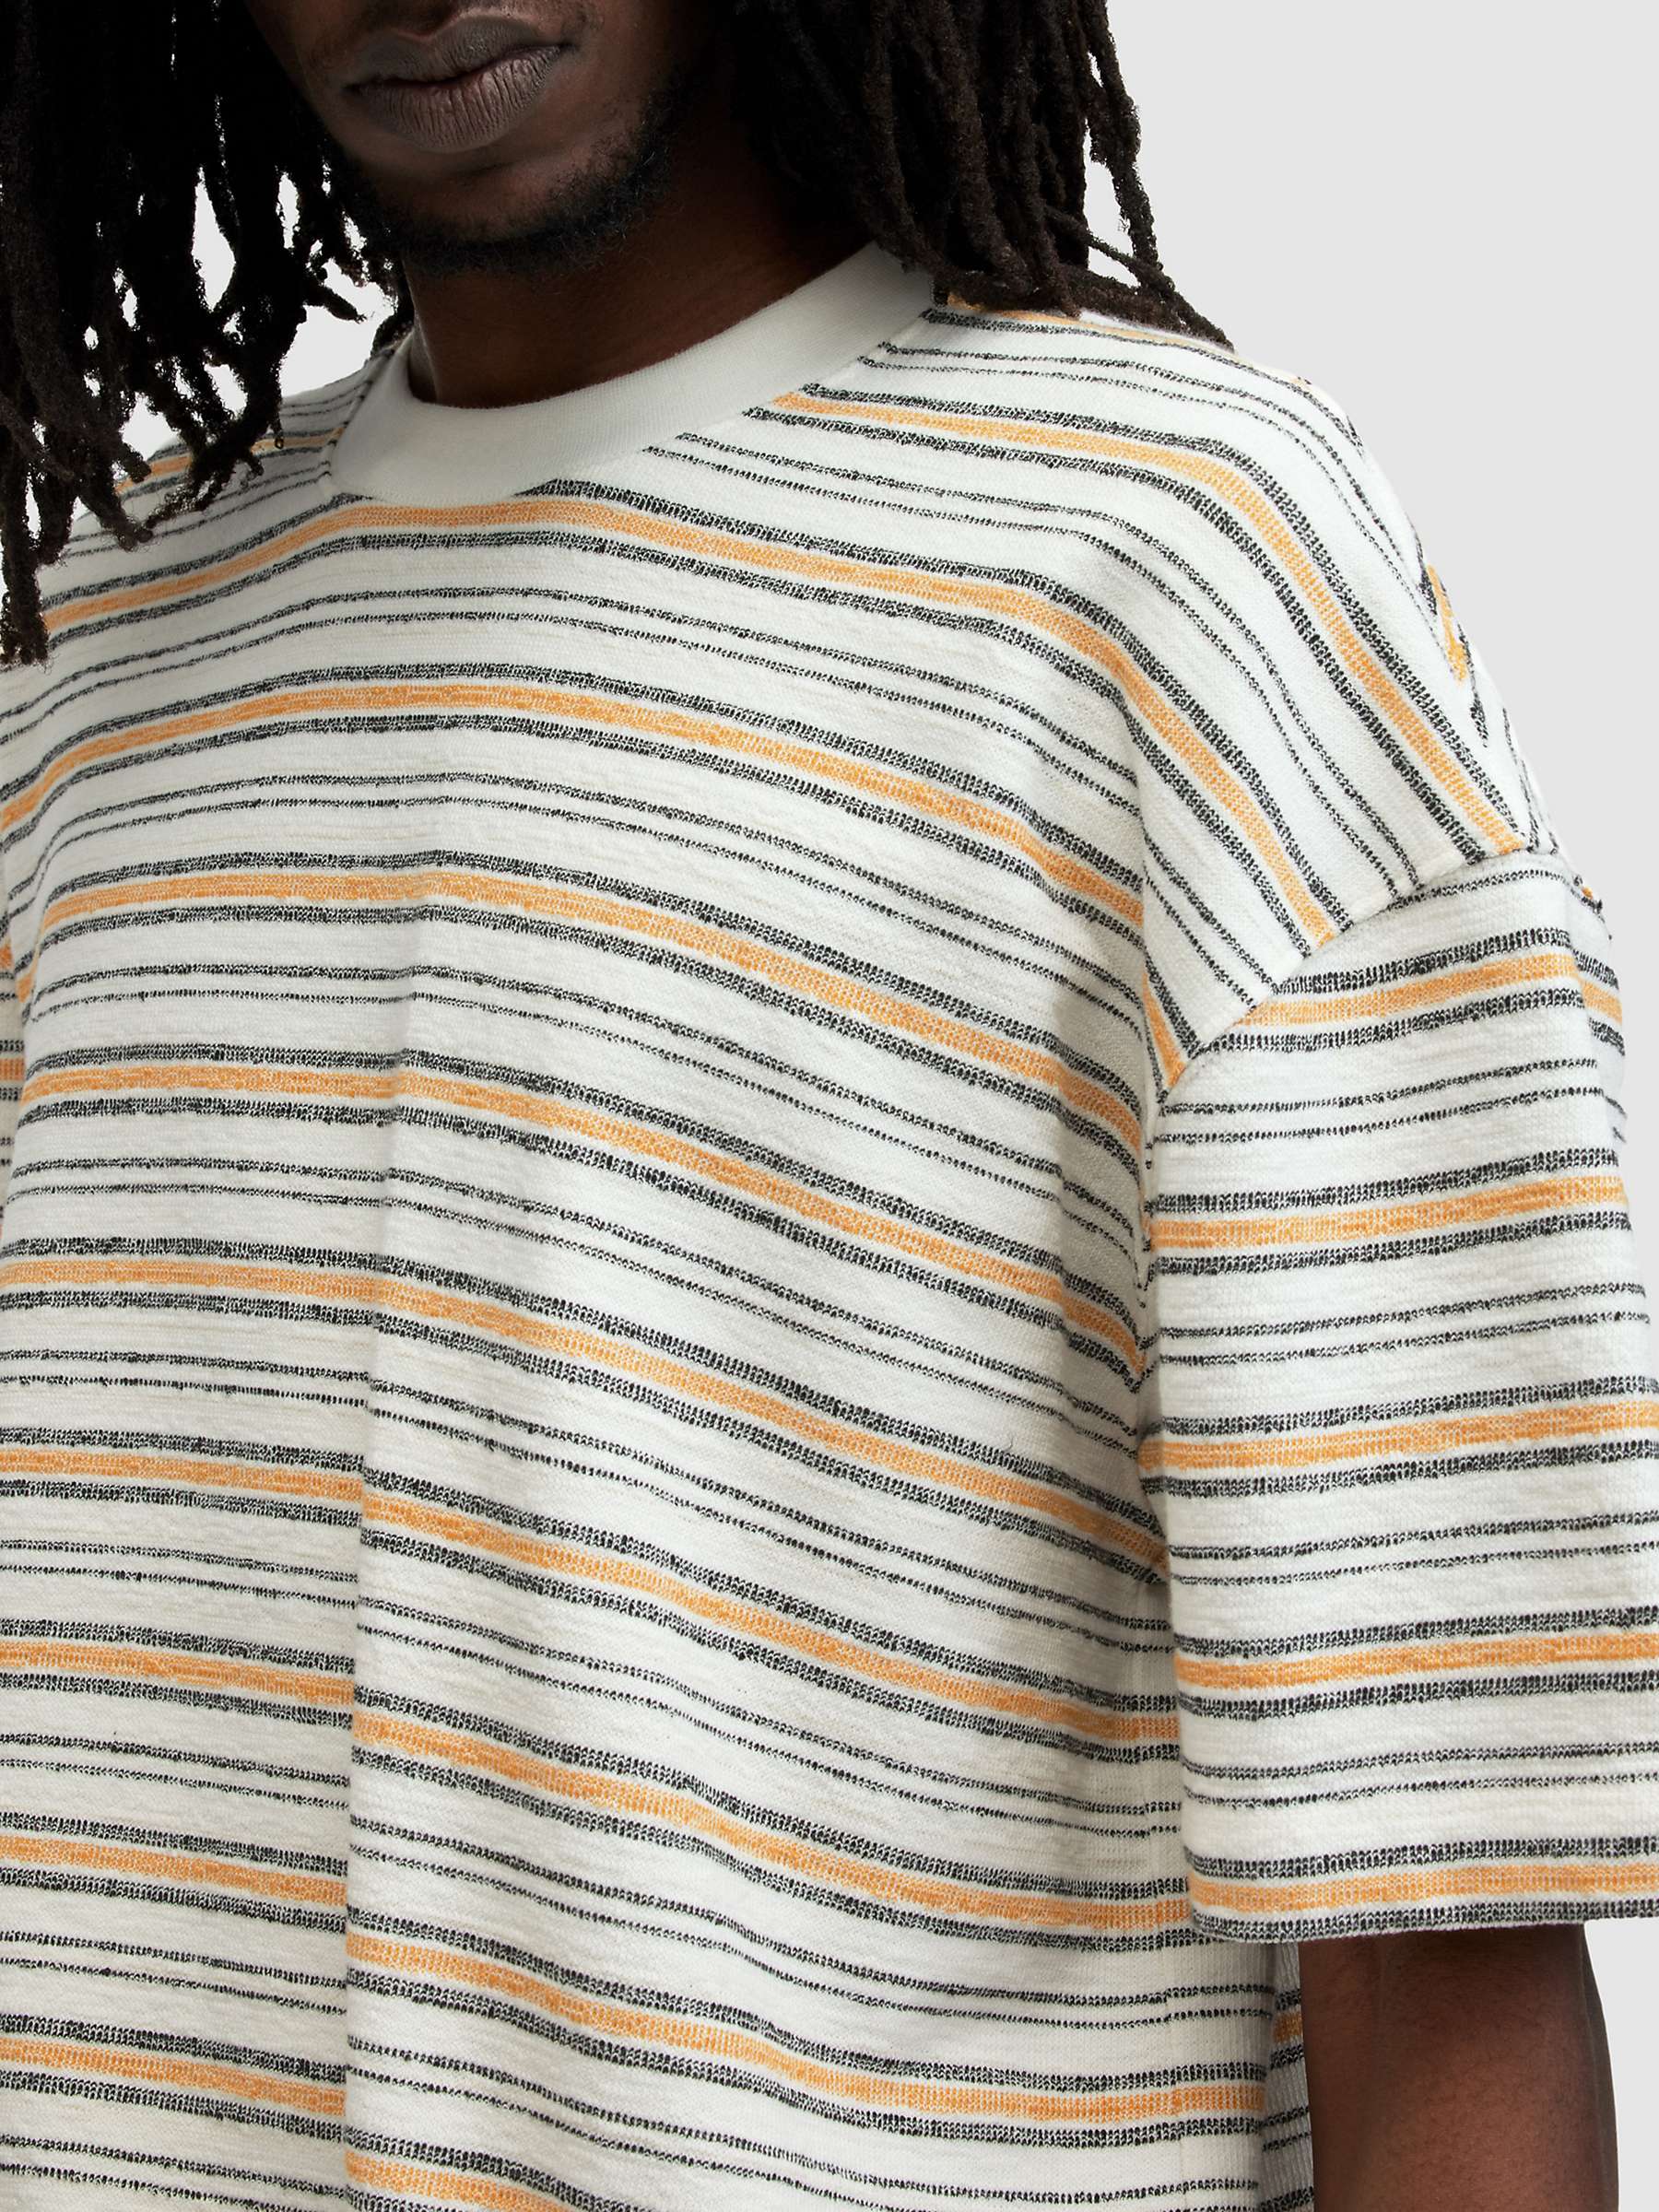 Buy AllSaints Stanton Short Sleeve Crew T-Shirt, White/Multi Online at johnlewis.com